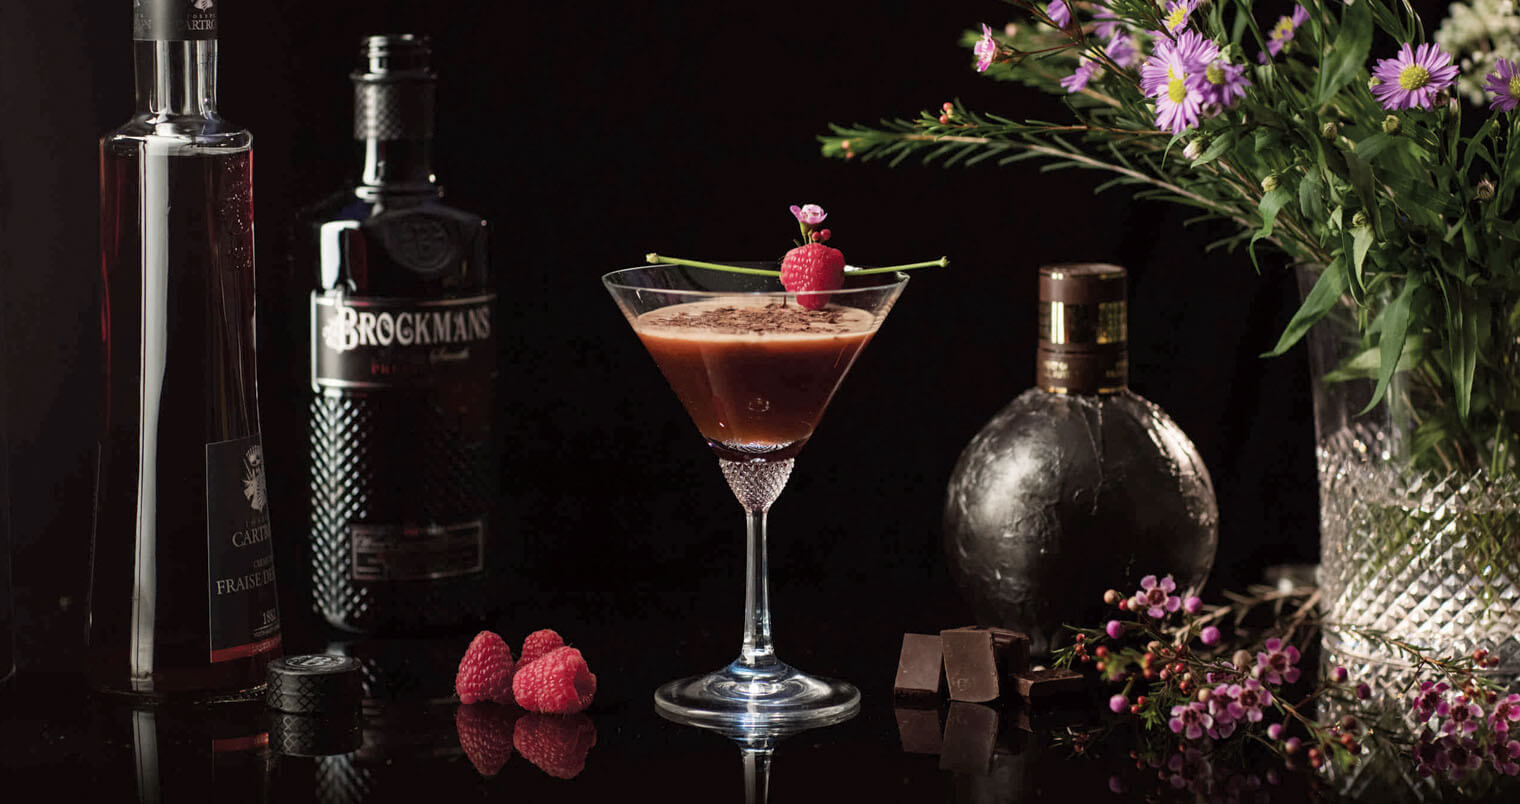 Brockmans Forest Gâteau Martini, featured image